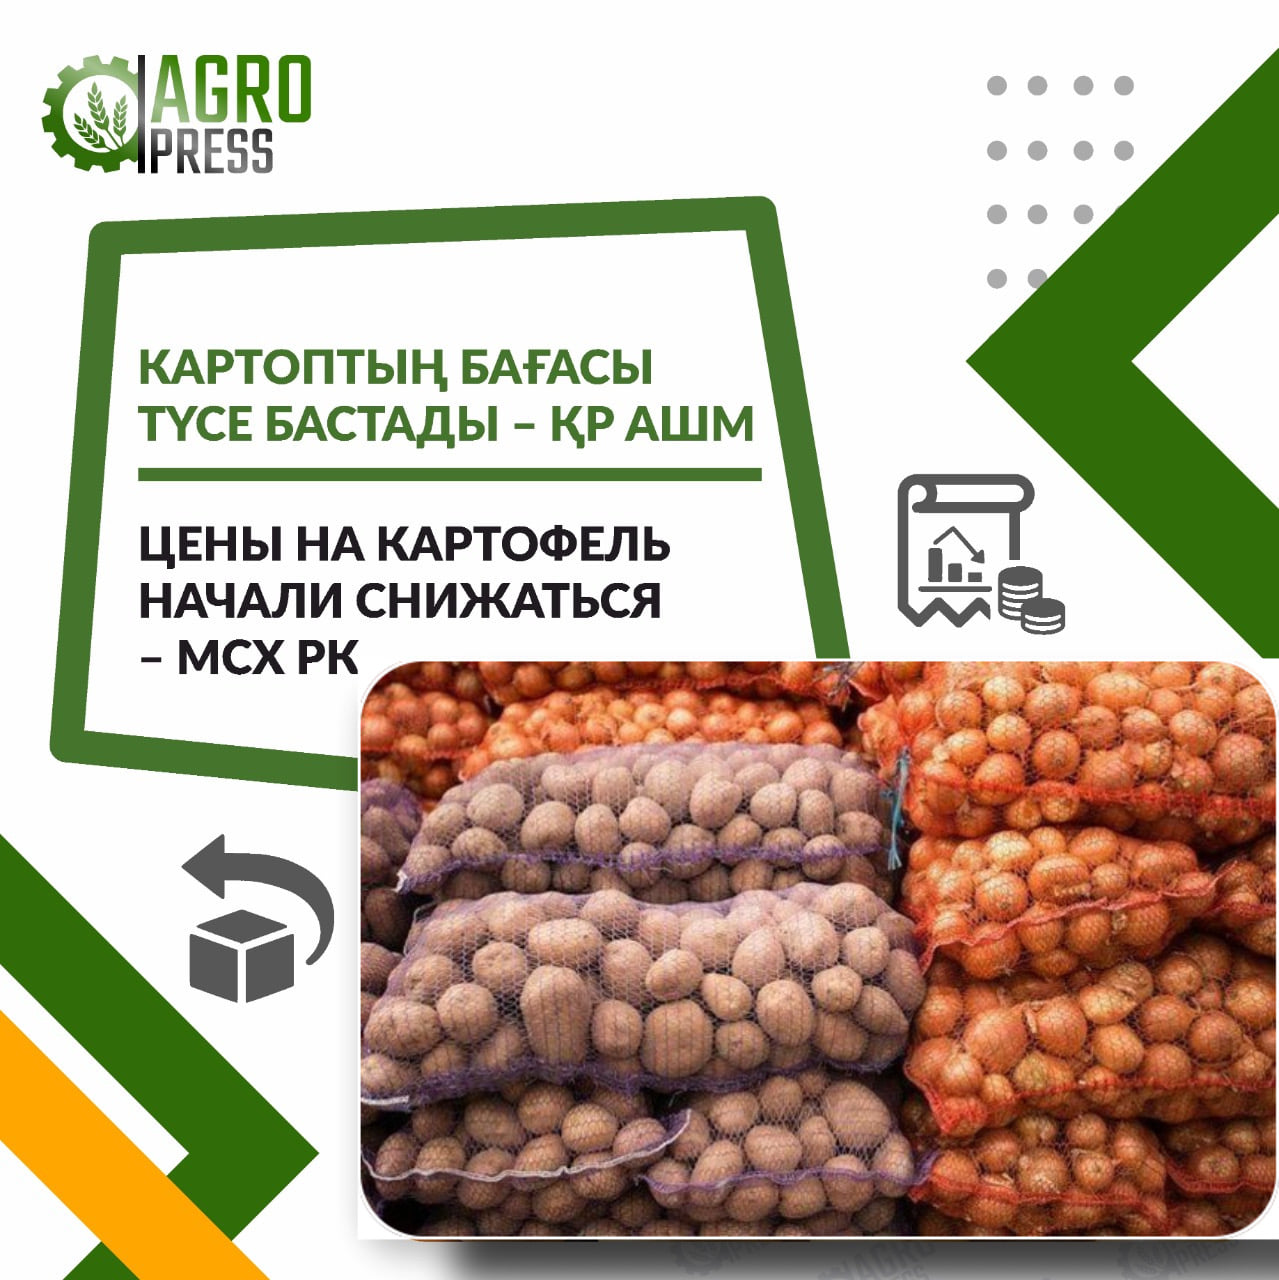 Картофеля в Казахстане достаточно - МСХ РК